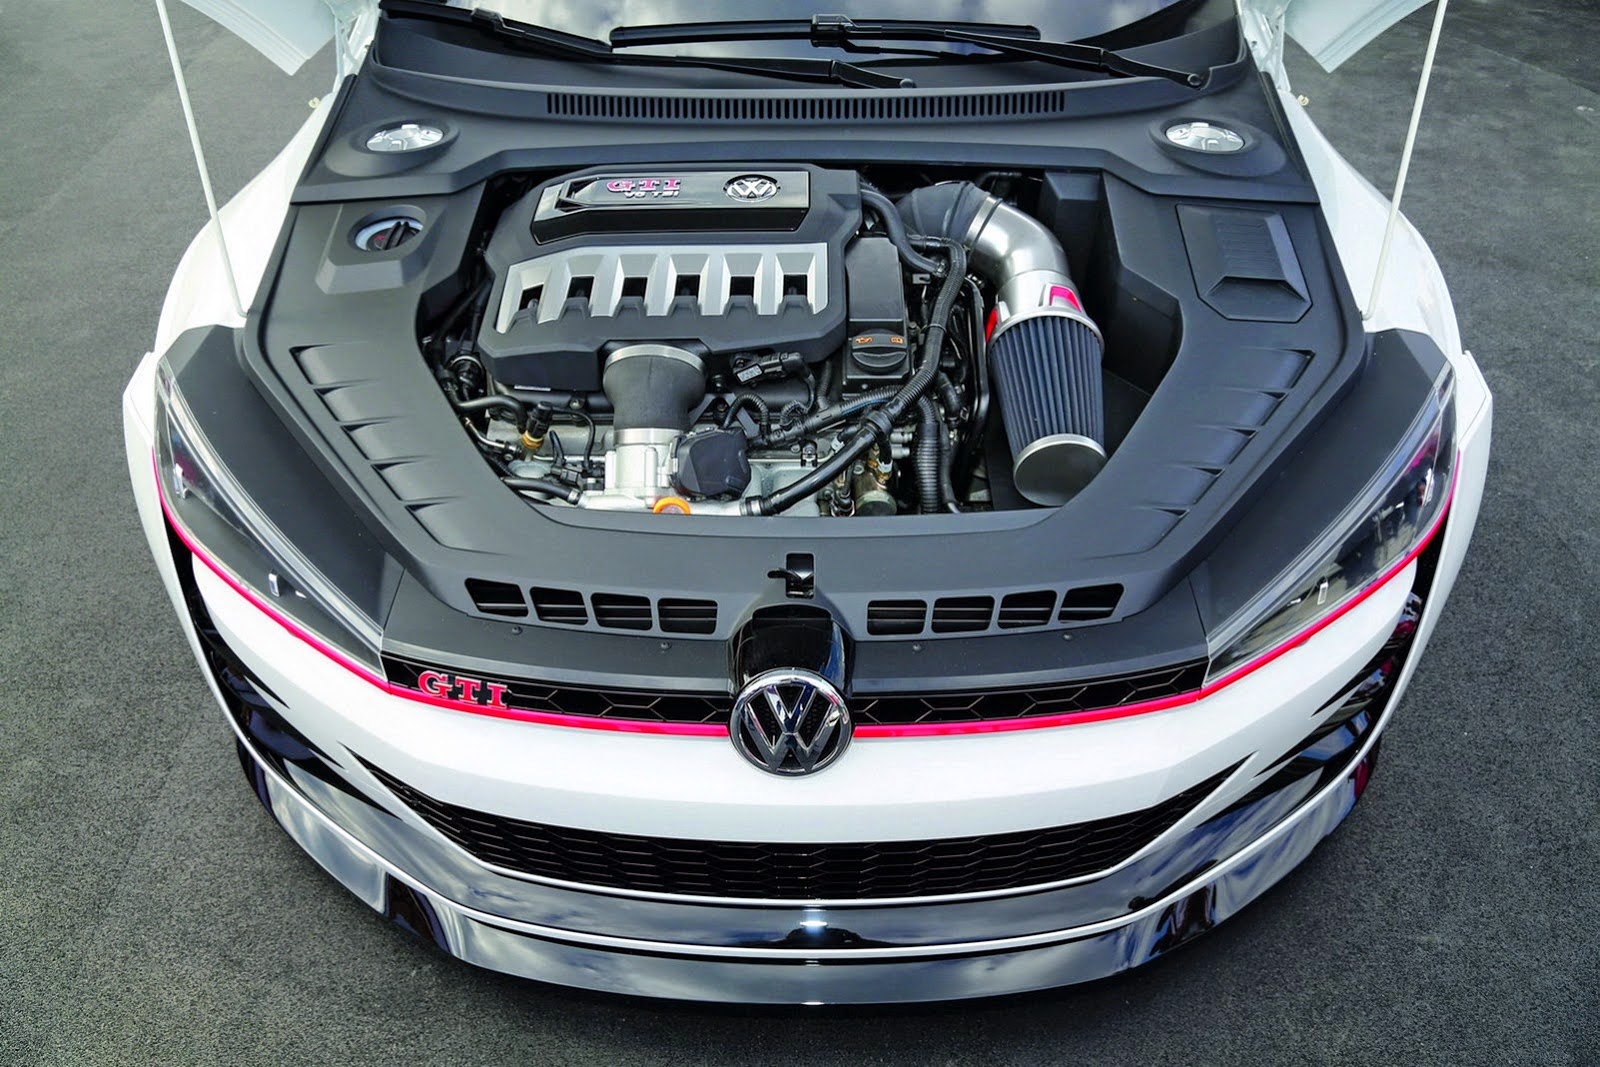 2017 VW Golf GTI engine